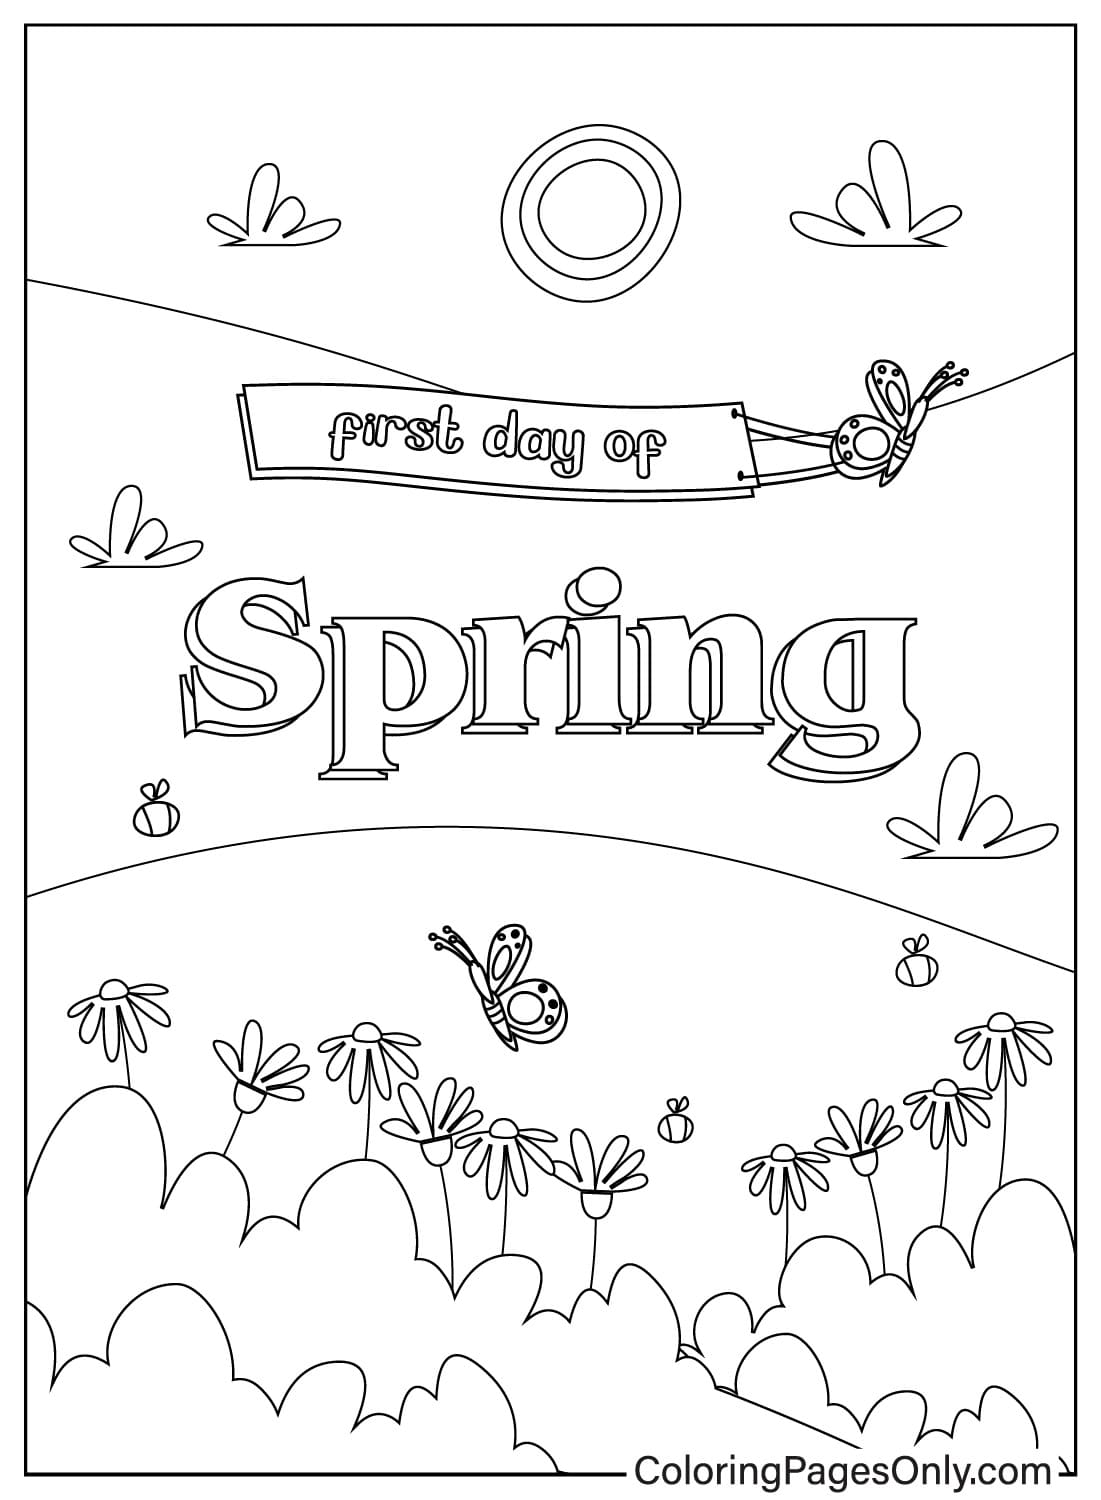 Folha para colorir do primeiro dia de primavera para crianças do primeiro dia de primavera